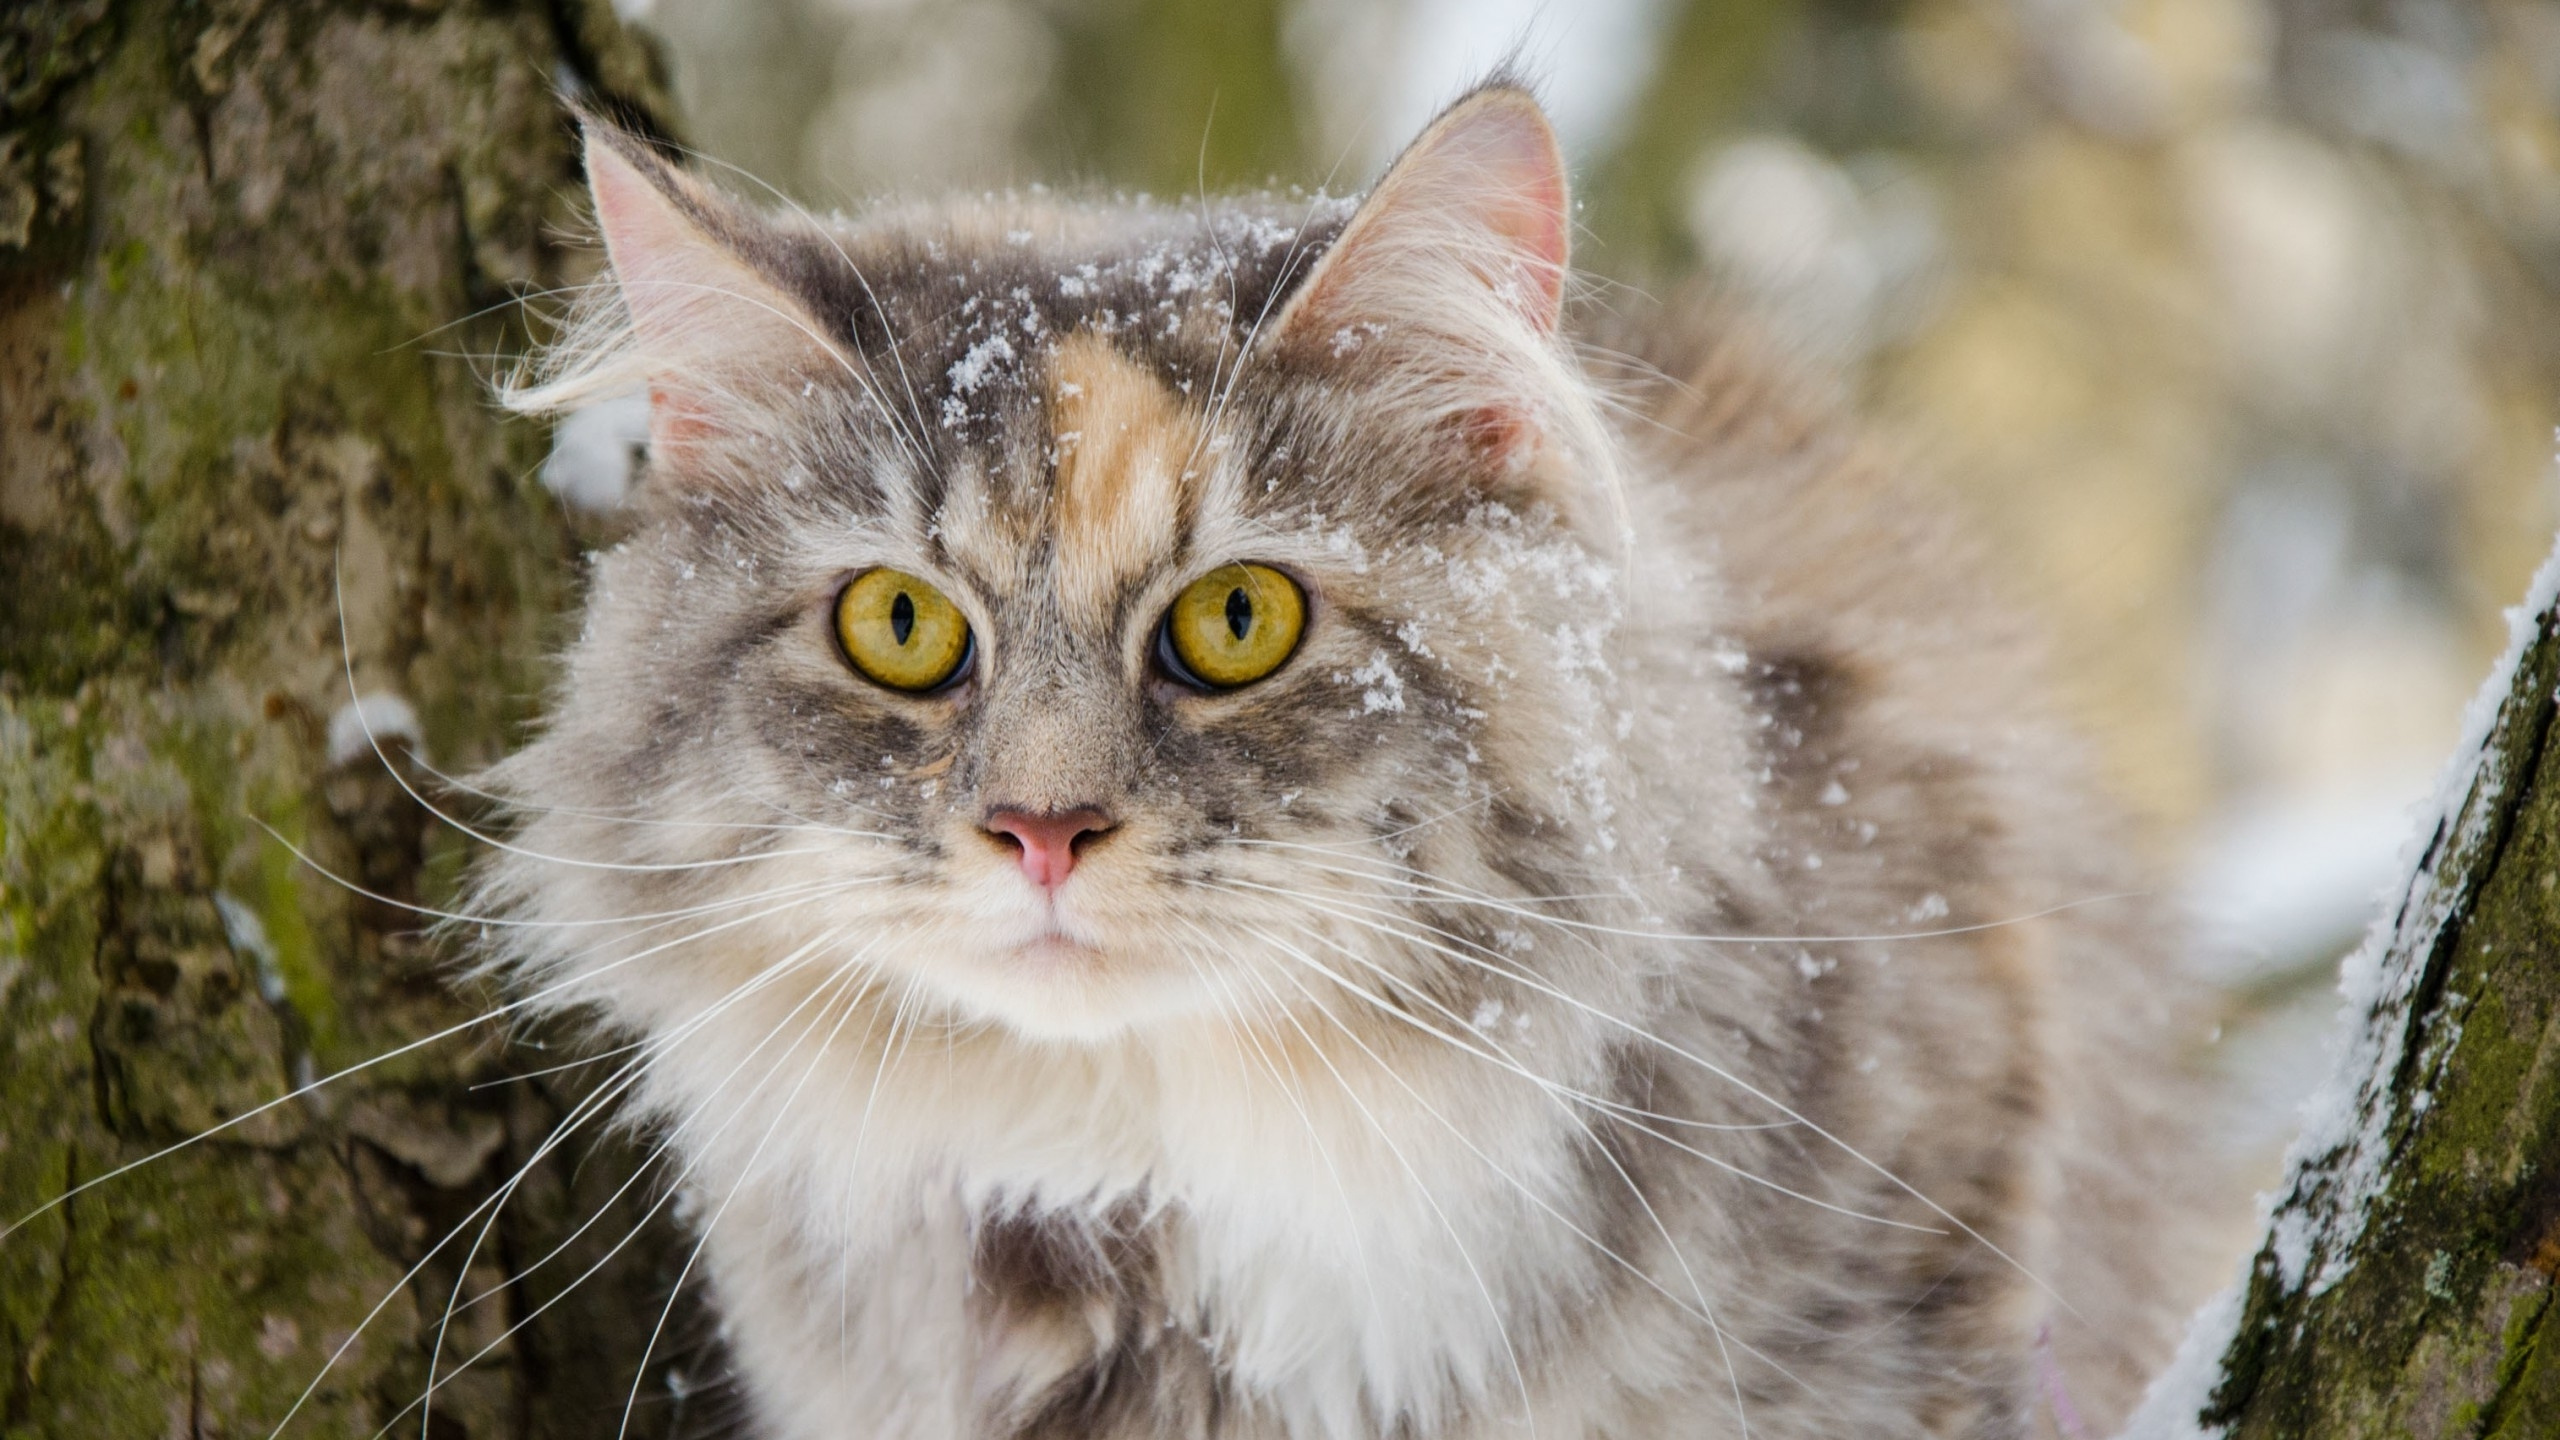 胡须, 西伯利亚的猫, 缅因, 挪威森林猫, 爱琴的猫 壁纸 2560x1440 允许